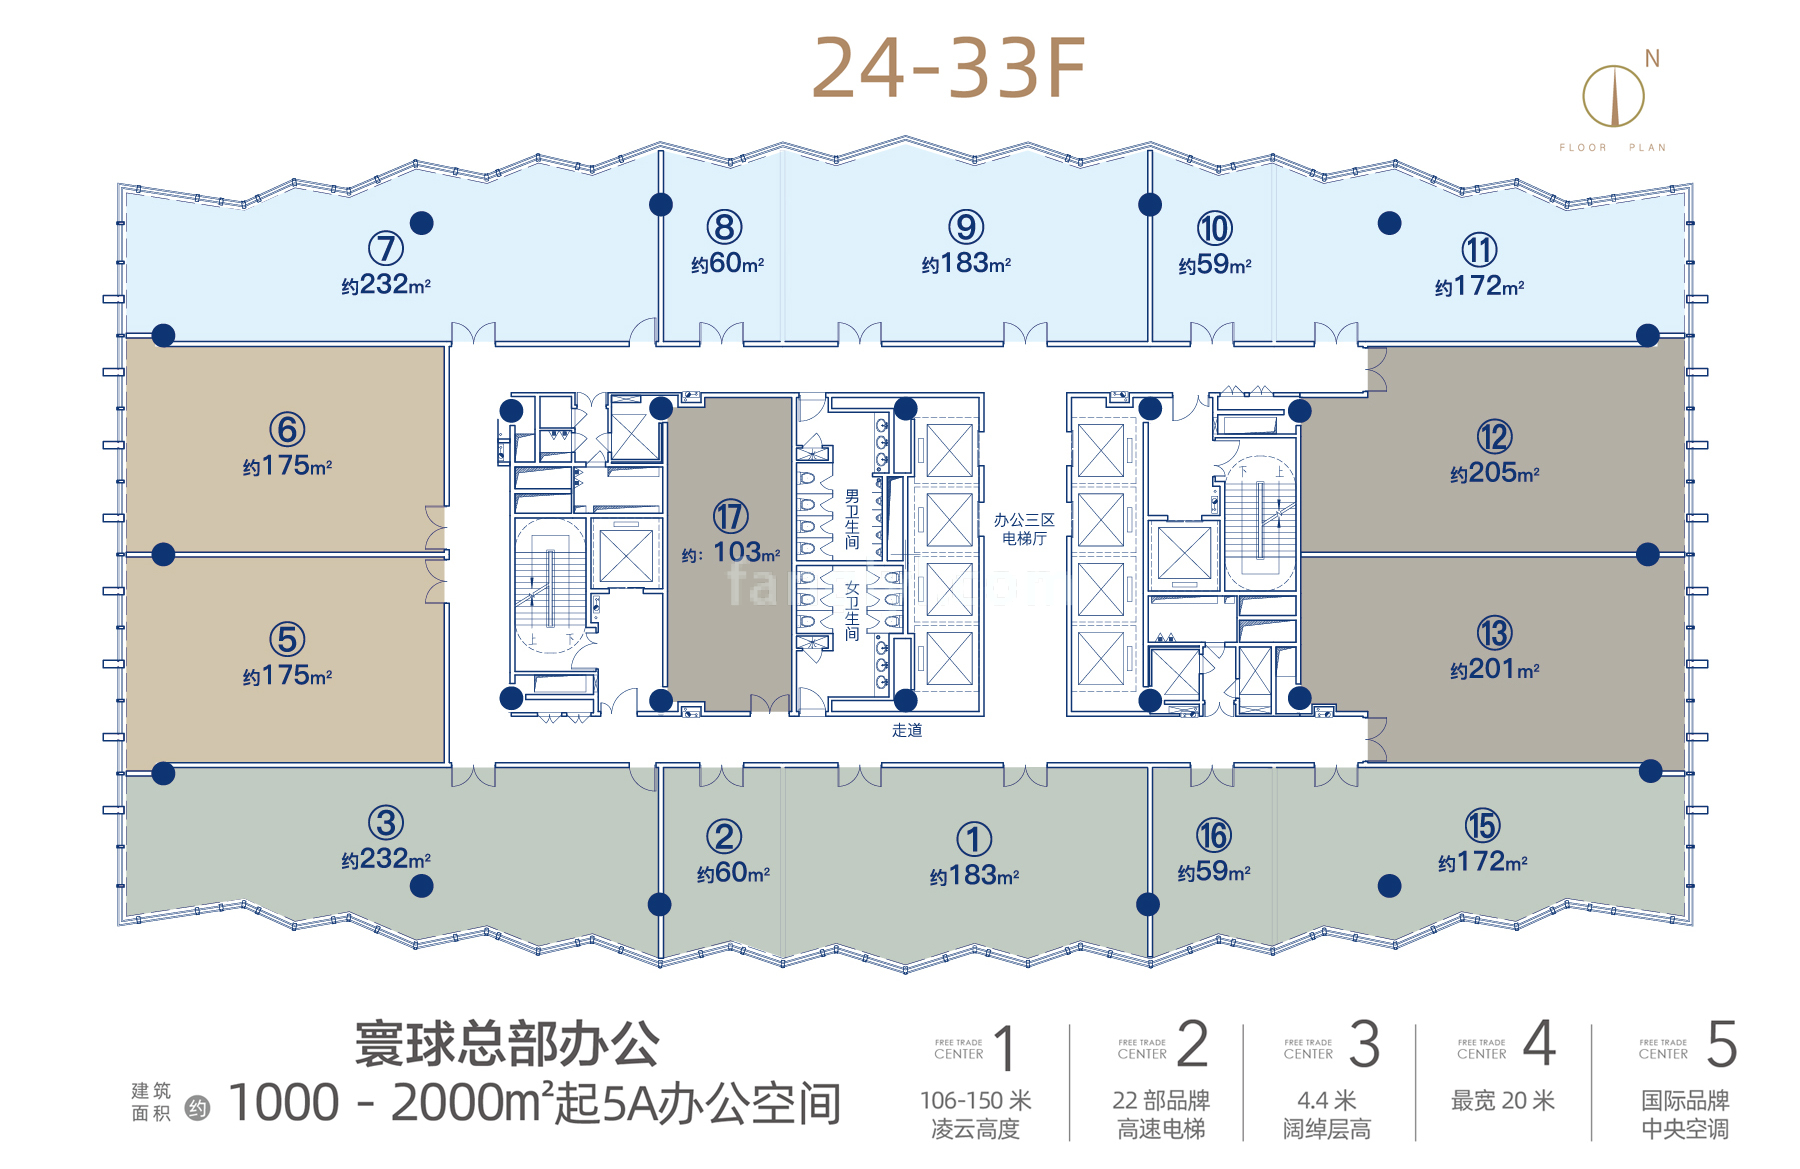 中交国际自贸中心 寰球总部办公 标准层平面图